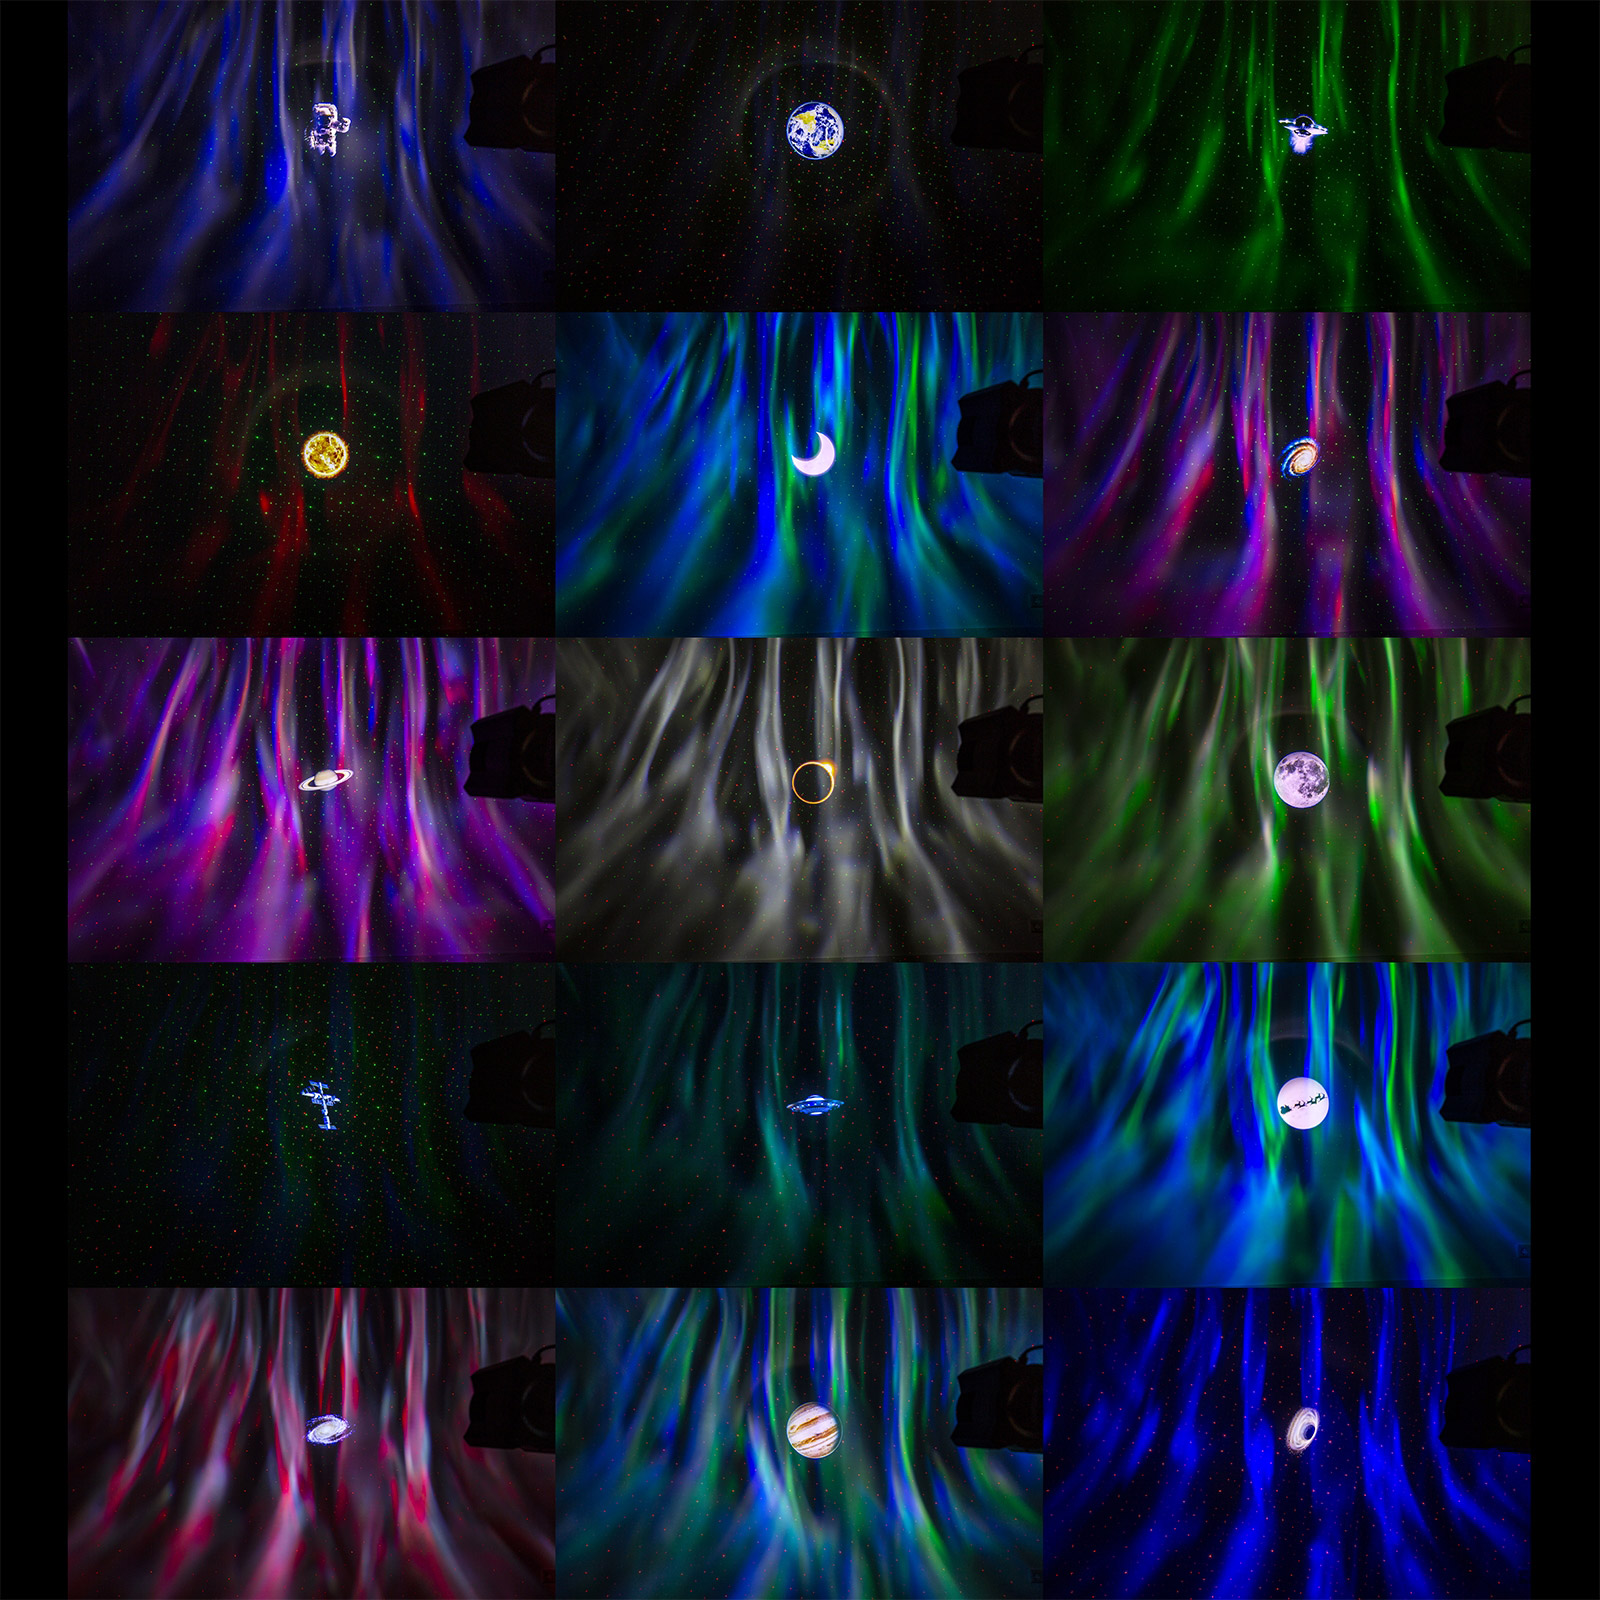 13€ sur Fuzzix Aurora Projecteur aurore boréale - 4 LEDs 2 W RGBW + LED  blanche, 15 diapositives, haut-parleur Bluetooth, Eclairage et jeux de  lumière, Top Prix